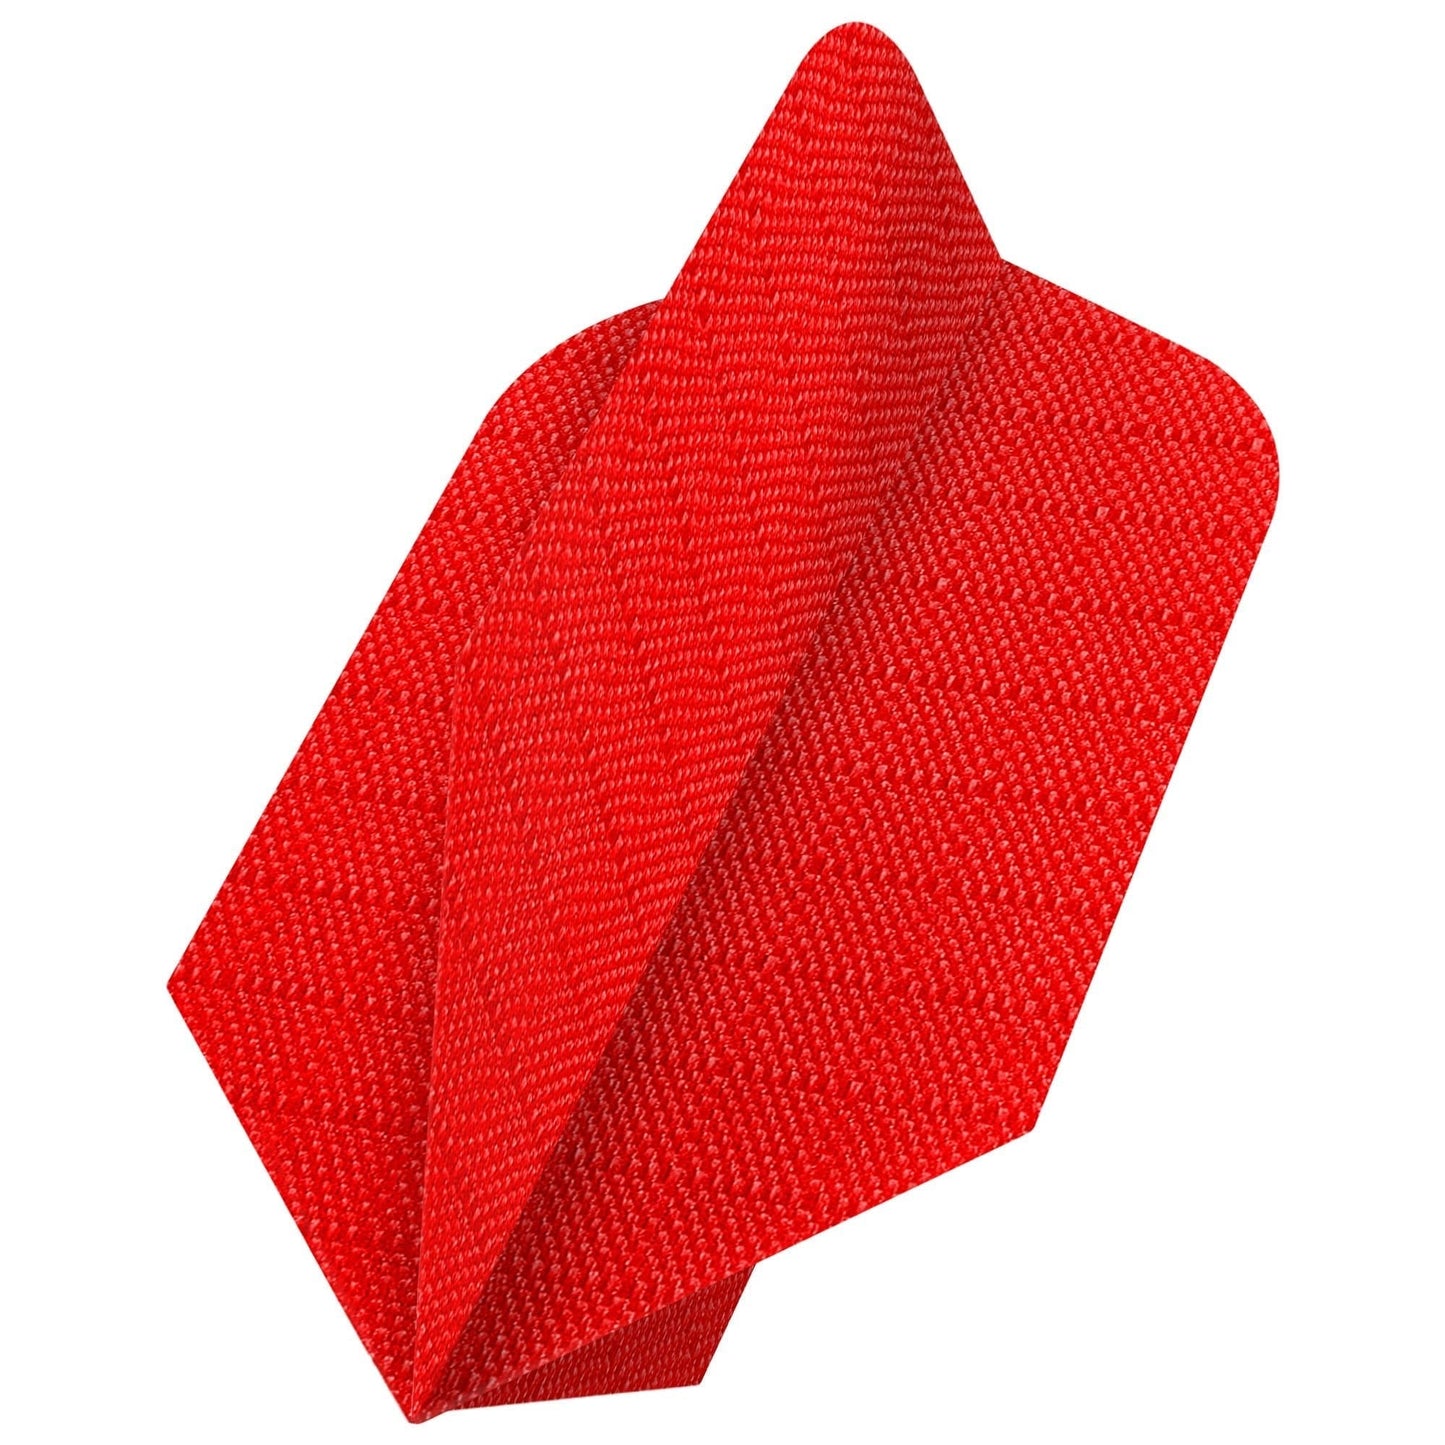 *Designa Dart Flights - Fabric Rip Stop Nylon - Longlife - Slim